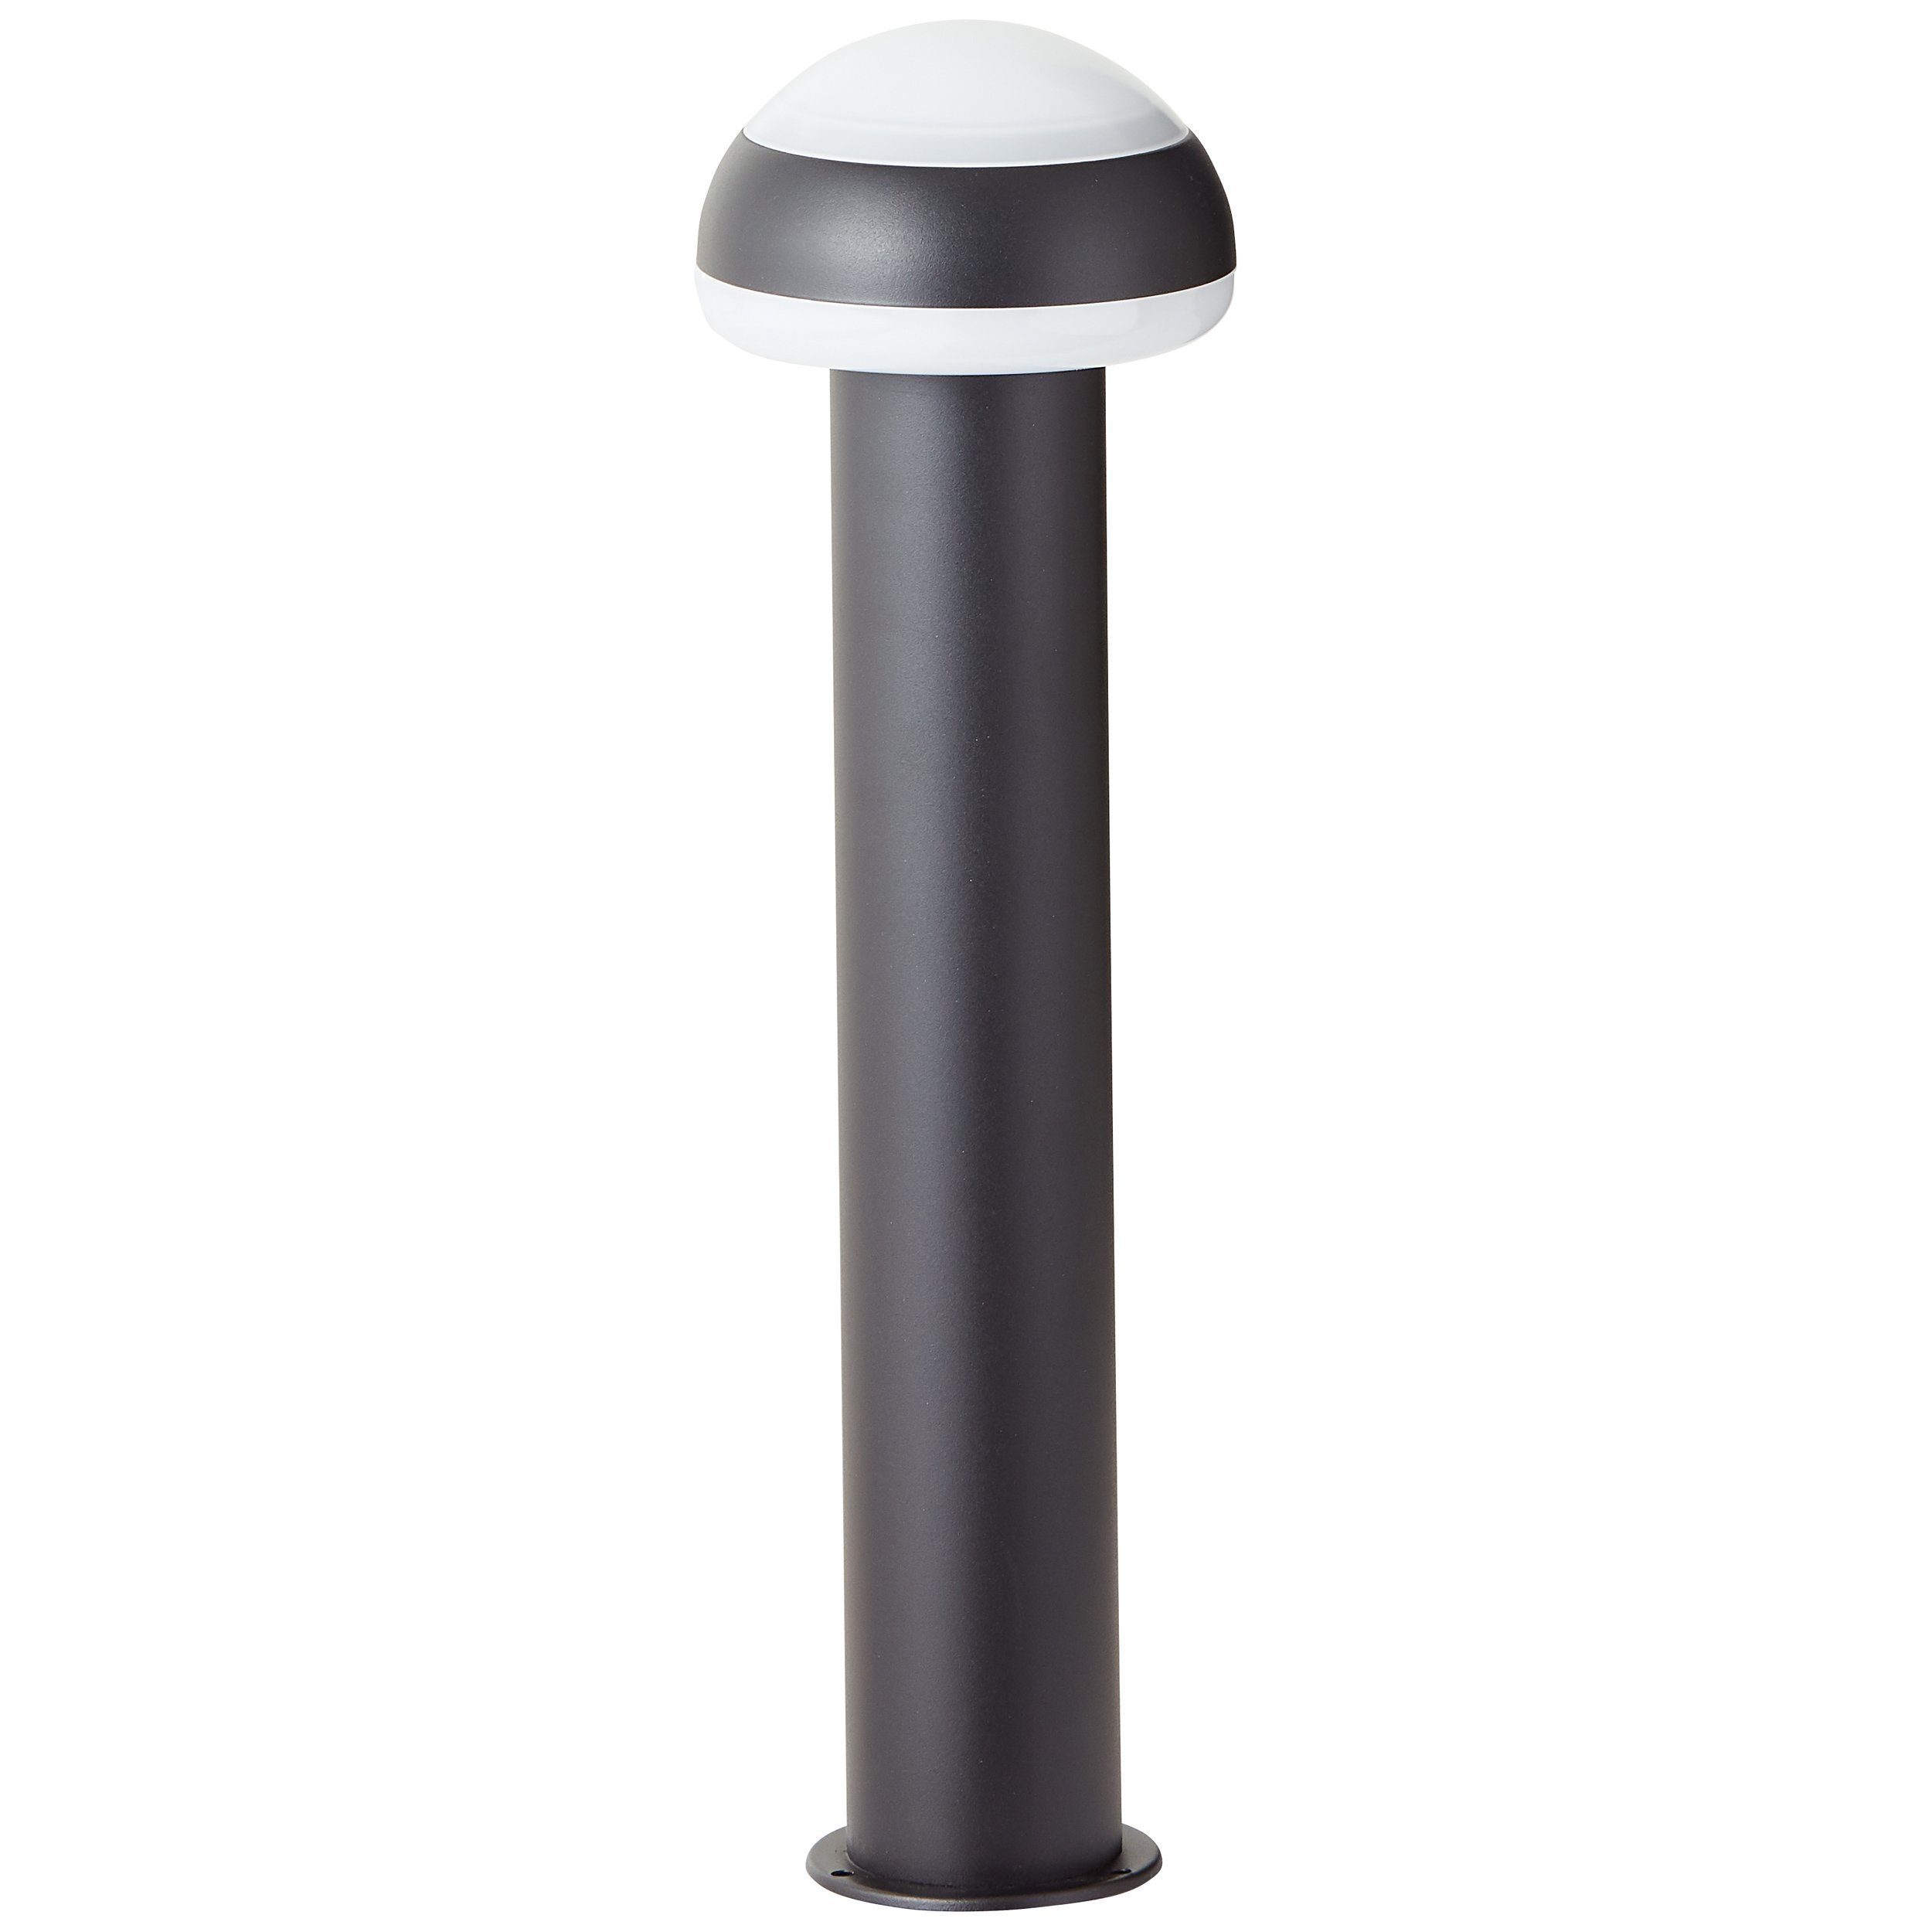 Brilliant Außen-Stehlampe Ilton sand Edelstahl/Kunststoff Außensockelleuchte schwarz, 50cm LED Ilton